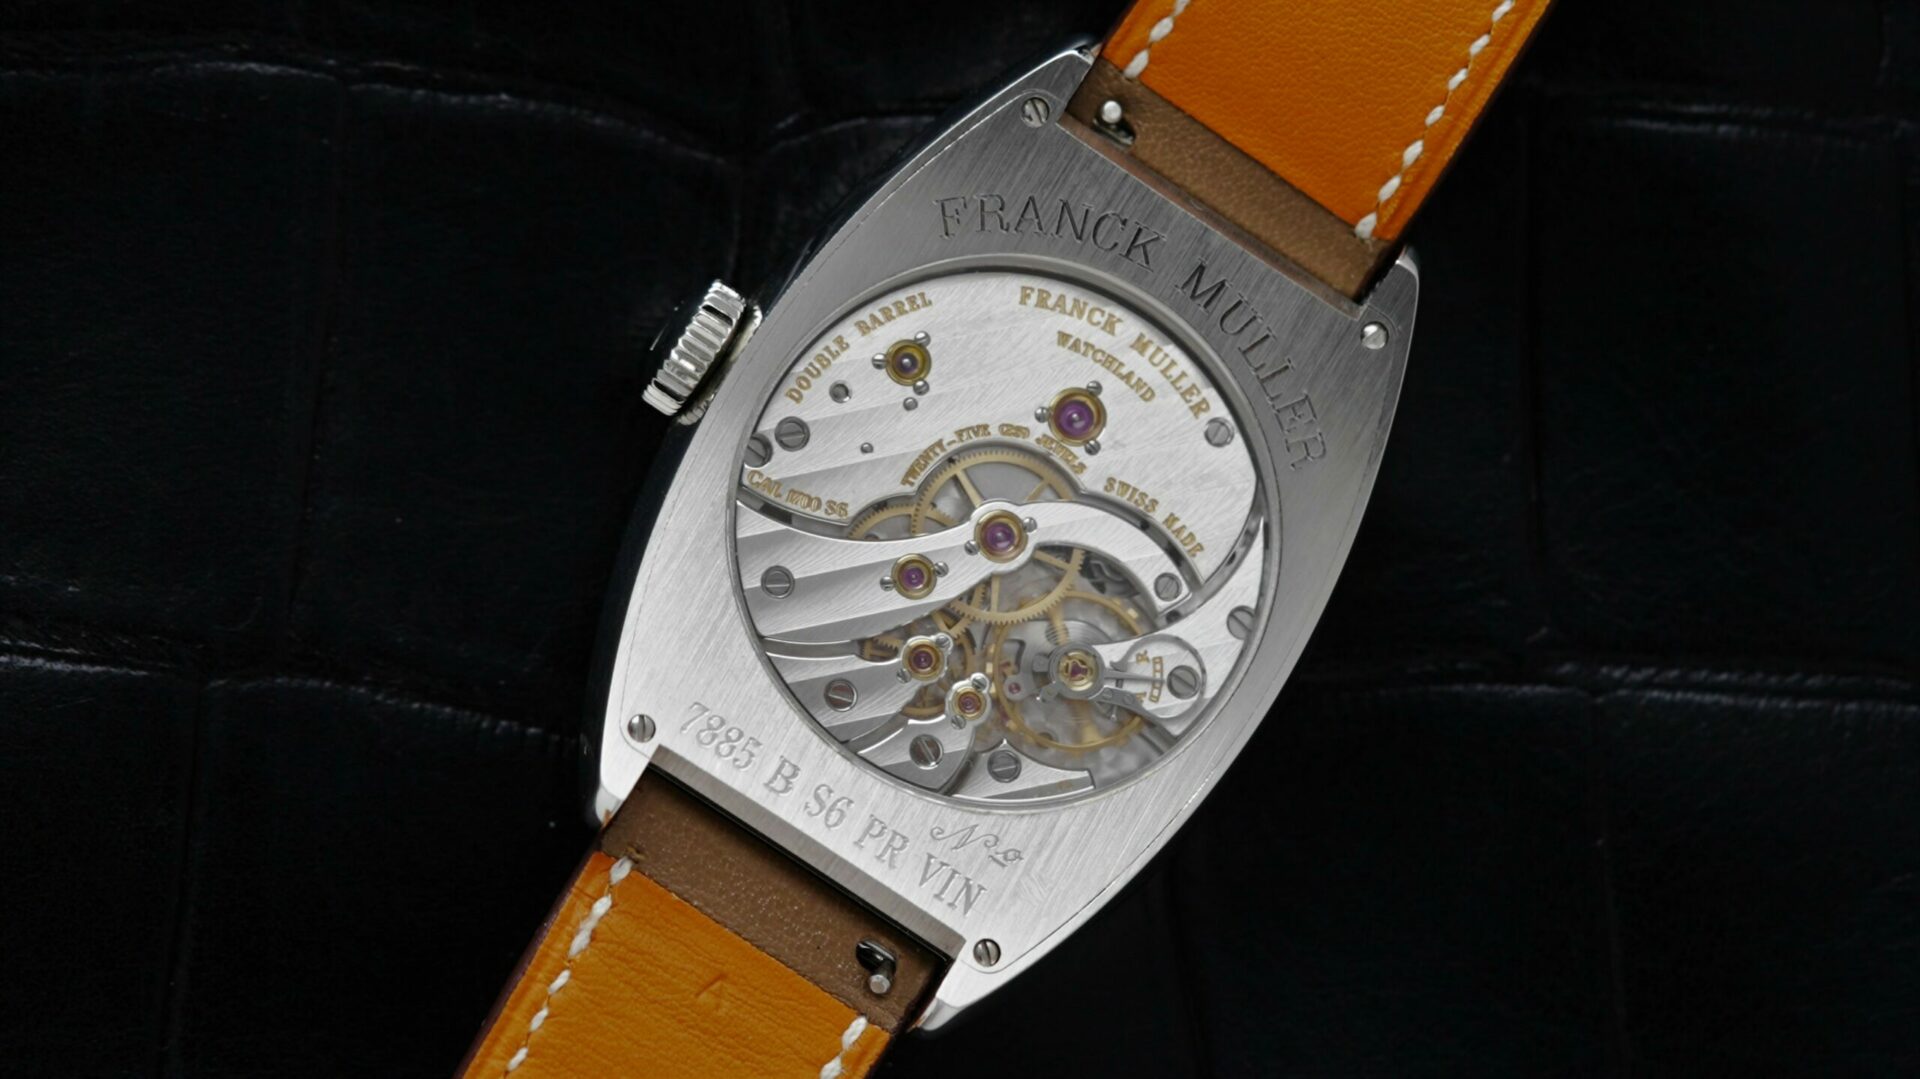 Back side of the Franck Muller Vintage Curvex 7 Day Reserve watch.